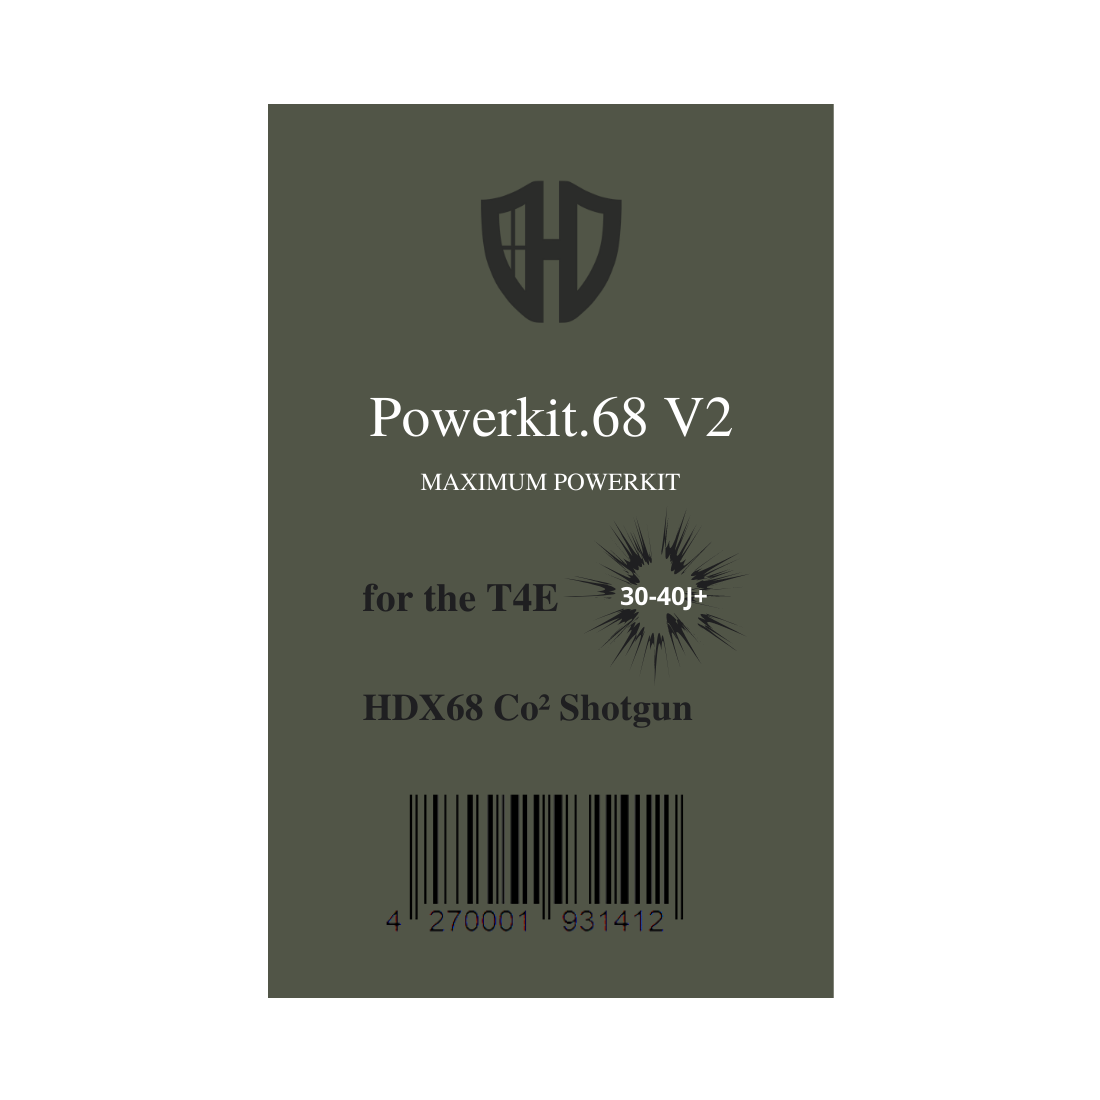 Powerkit.68 V2 for HDX68 | 7,5J | 16J | 40J | V2A | 40J+